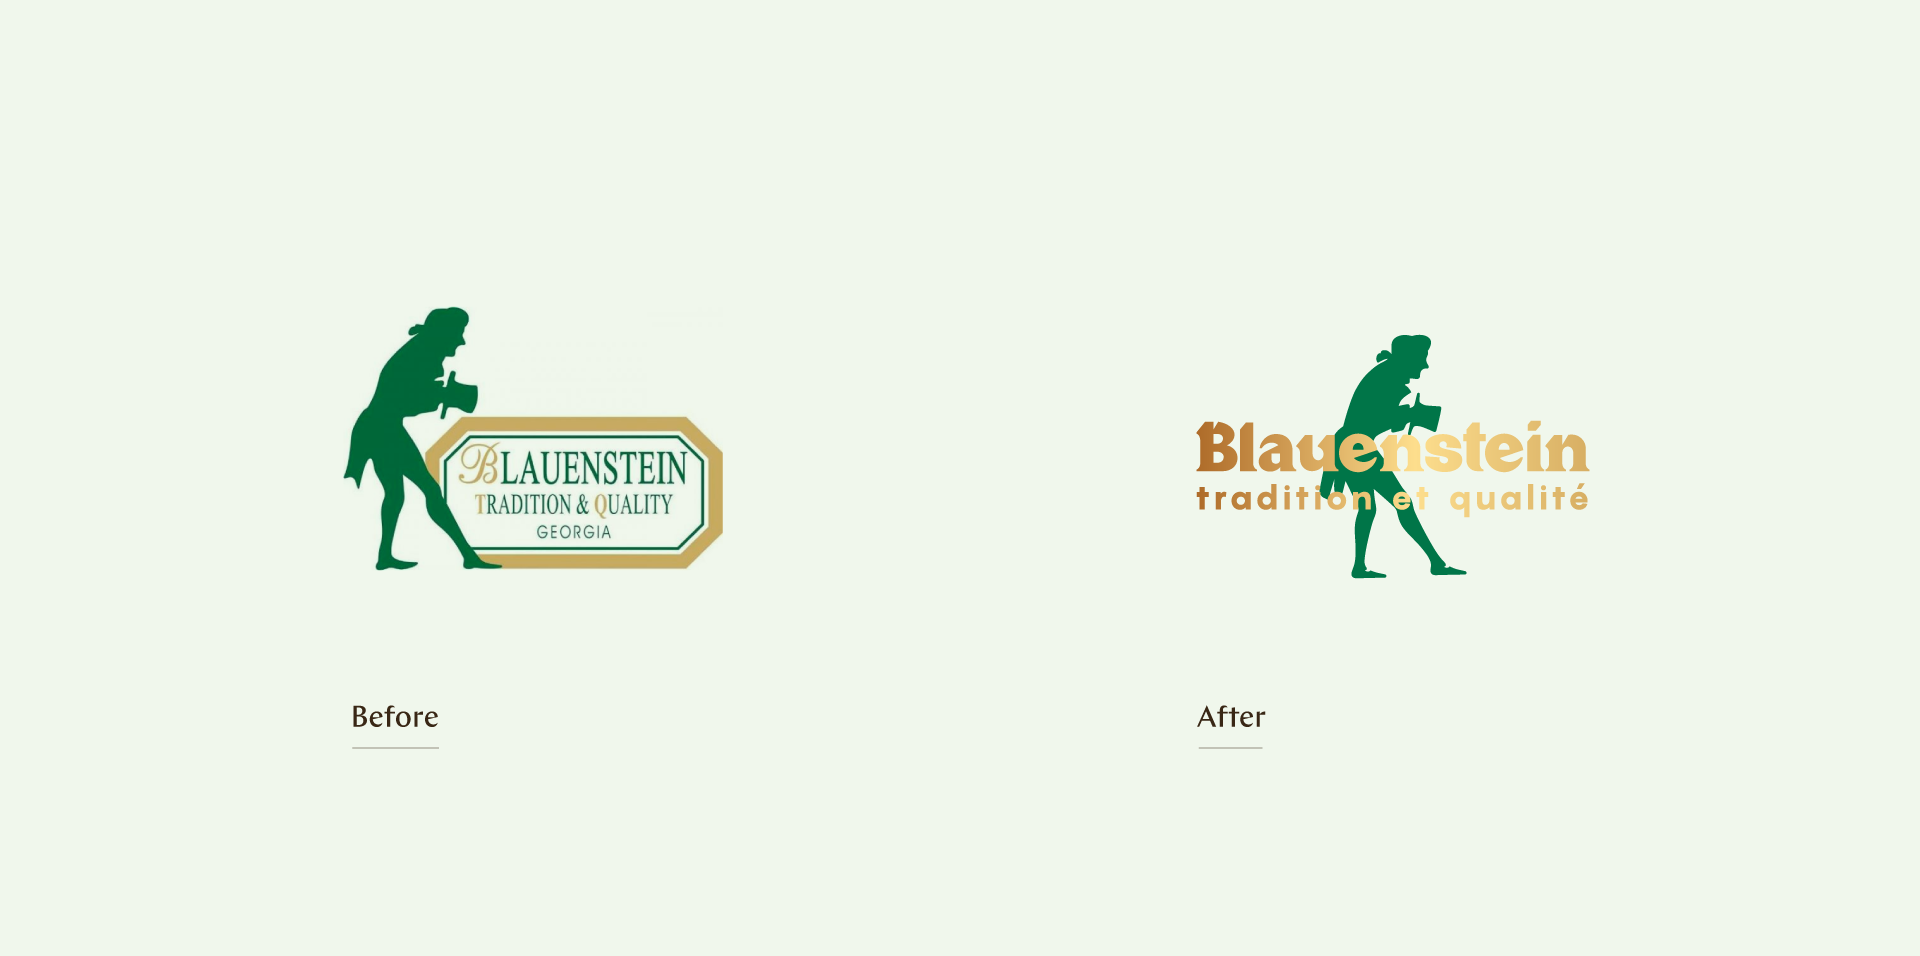 Blauenstein Farm Shop Visual Identity